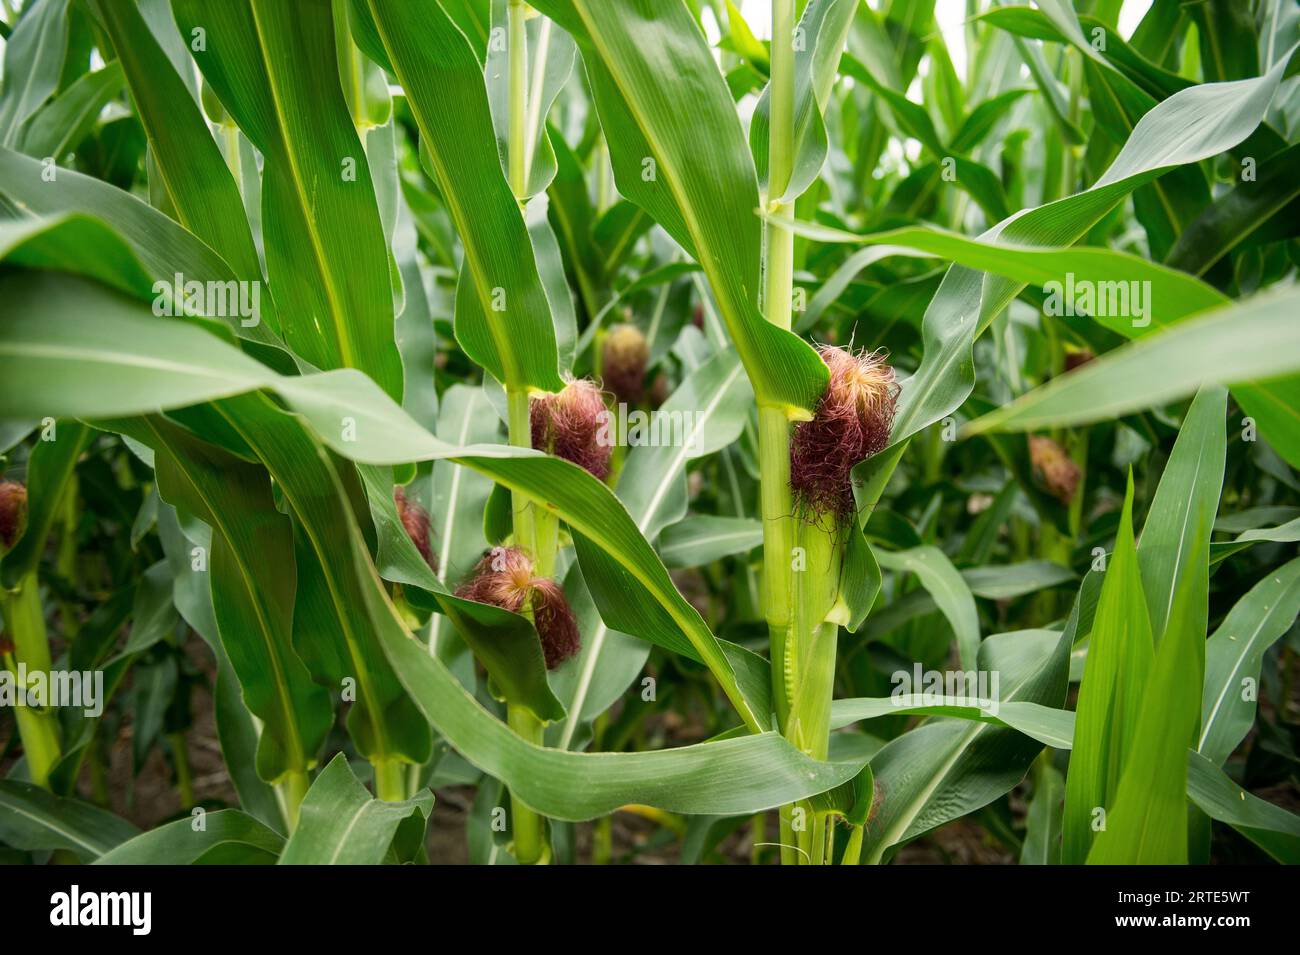 Nahaufnahme von Maisstielen in frühen Wachstumsphasen; Walton, Nebraska, Vereinigte Staaten von Amerika Stockfoto